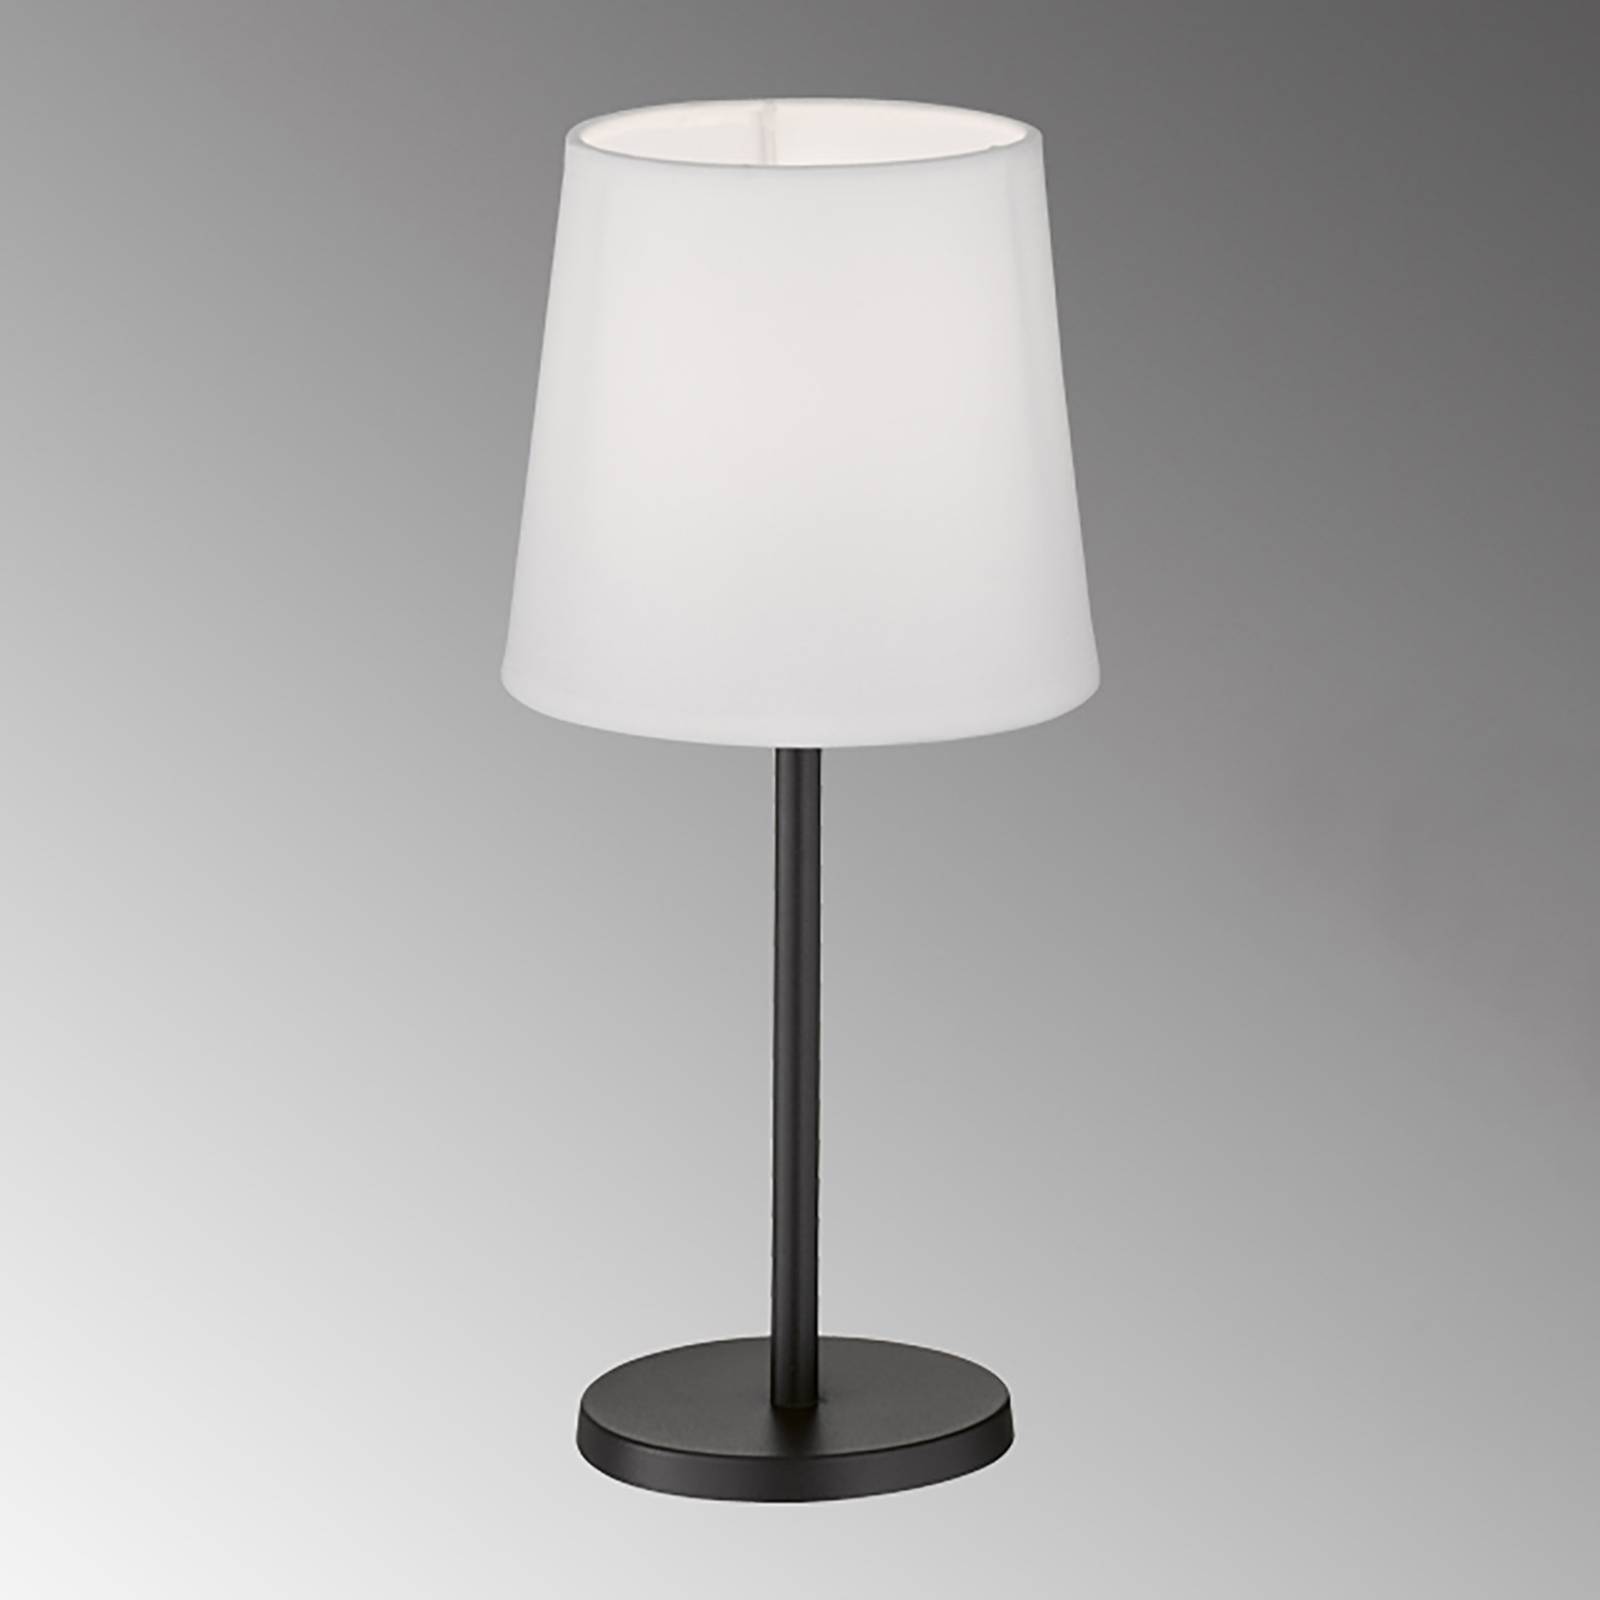 FH Lighting Eve bordslampa med tygskärm svart/vit